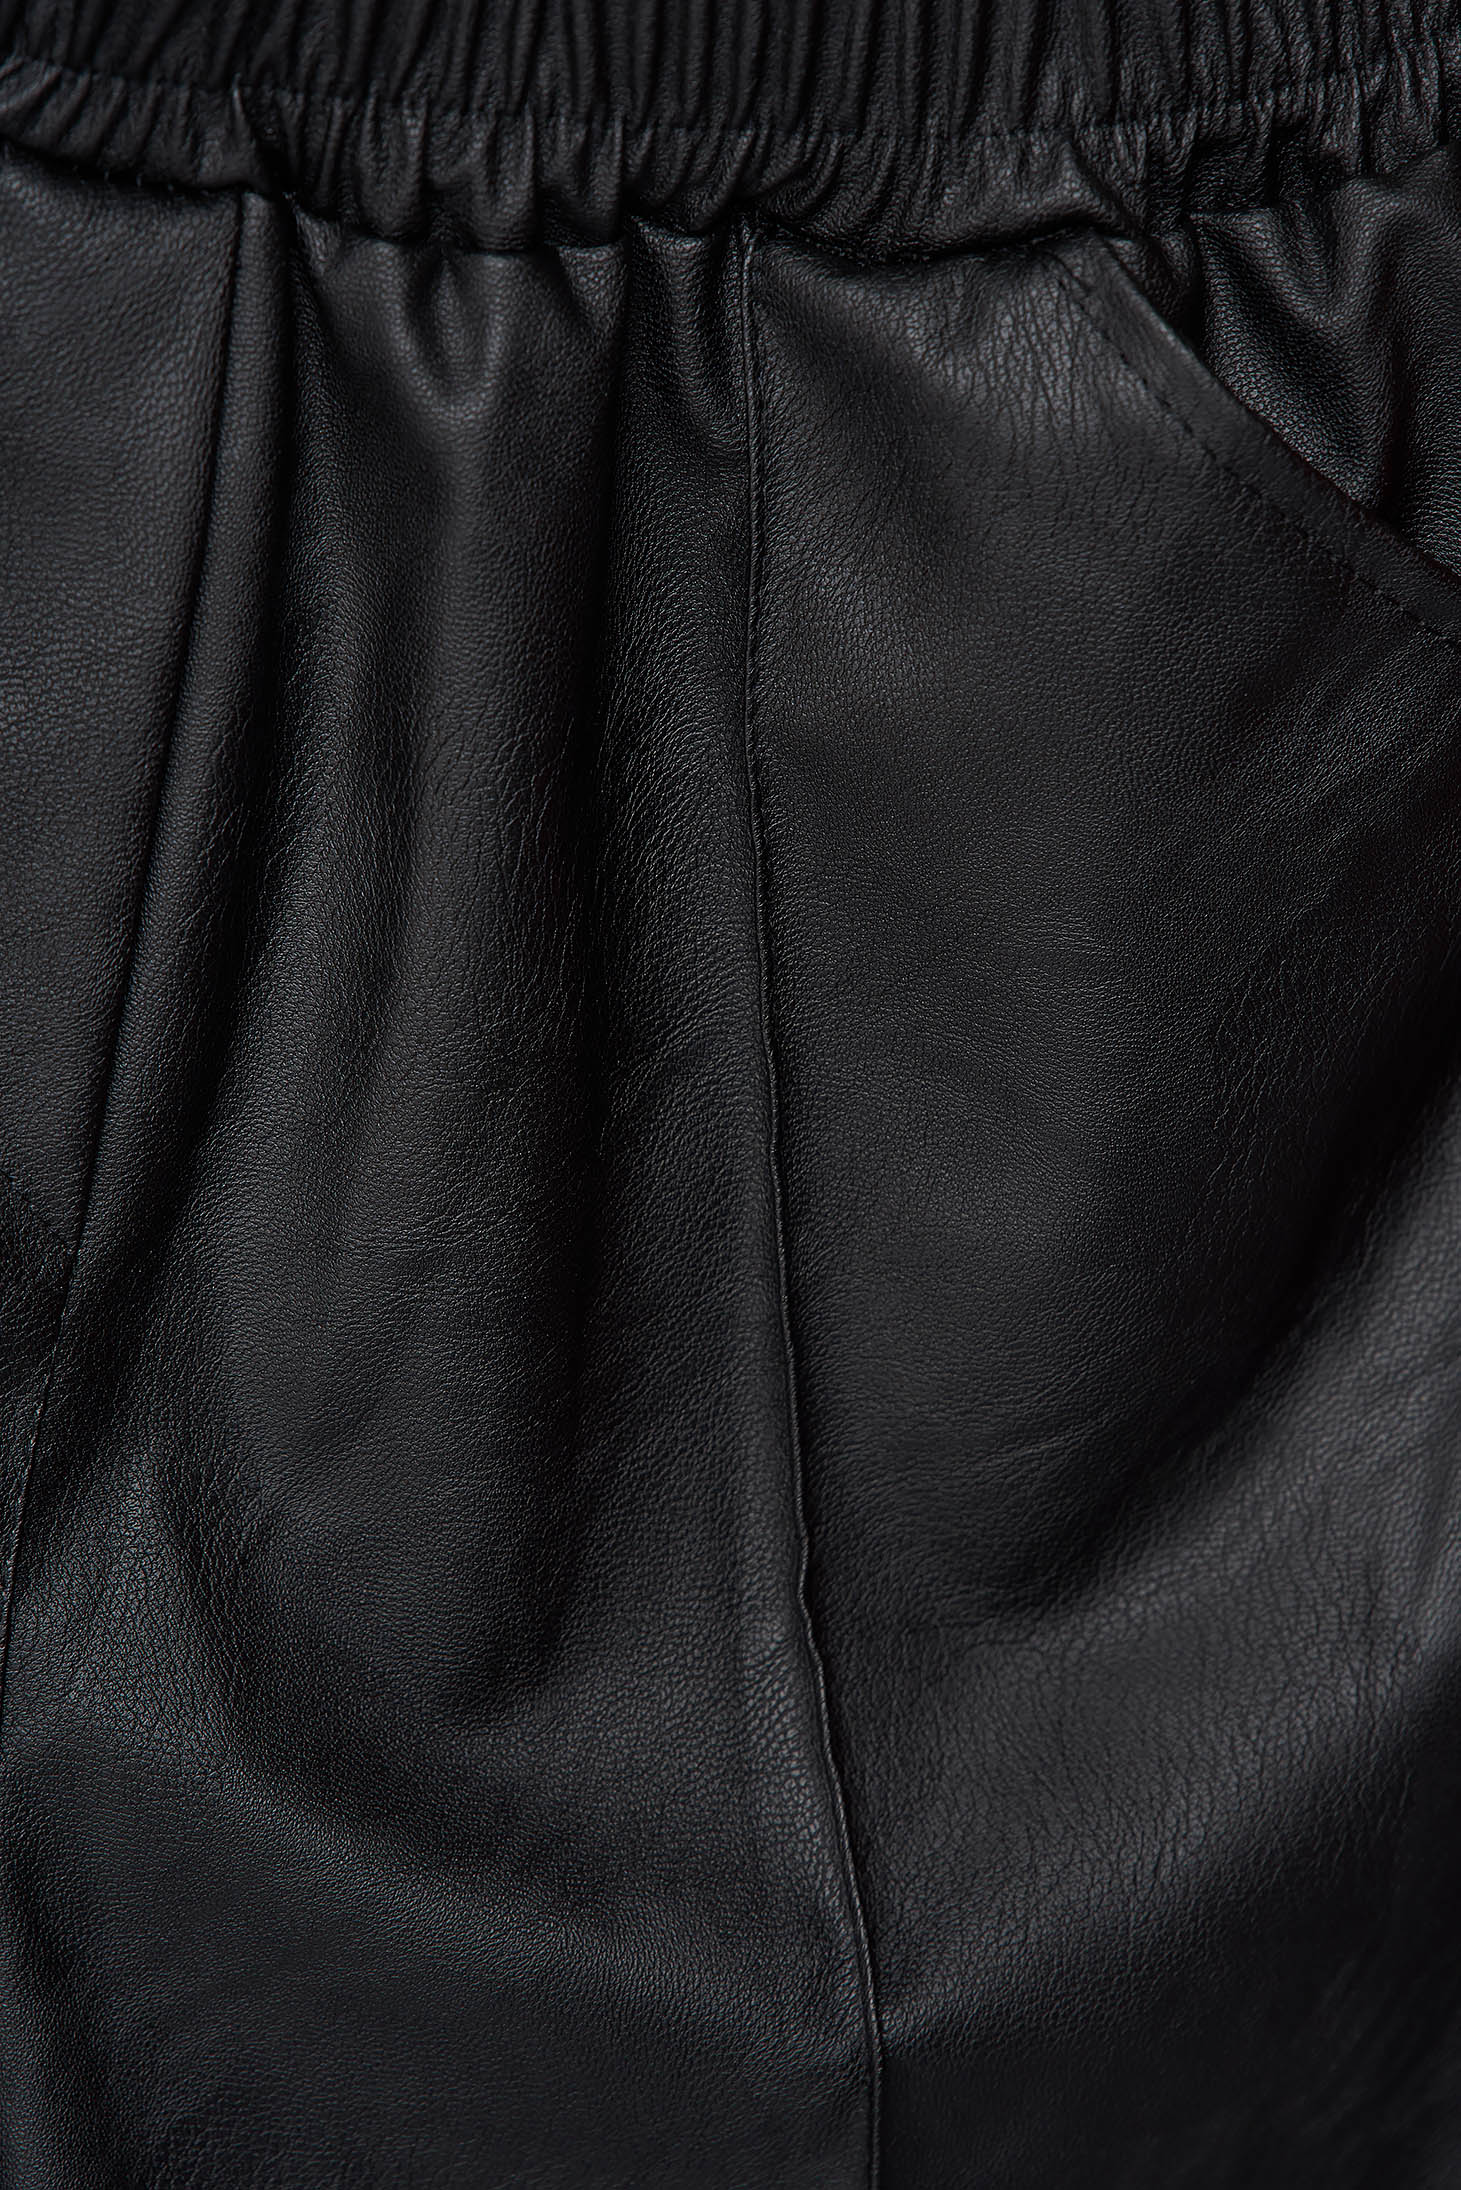 Hosszú fekete bő szabású szintetikus bőr nadrág rugalmas anyagból 5 - StarShinerS.hu